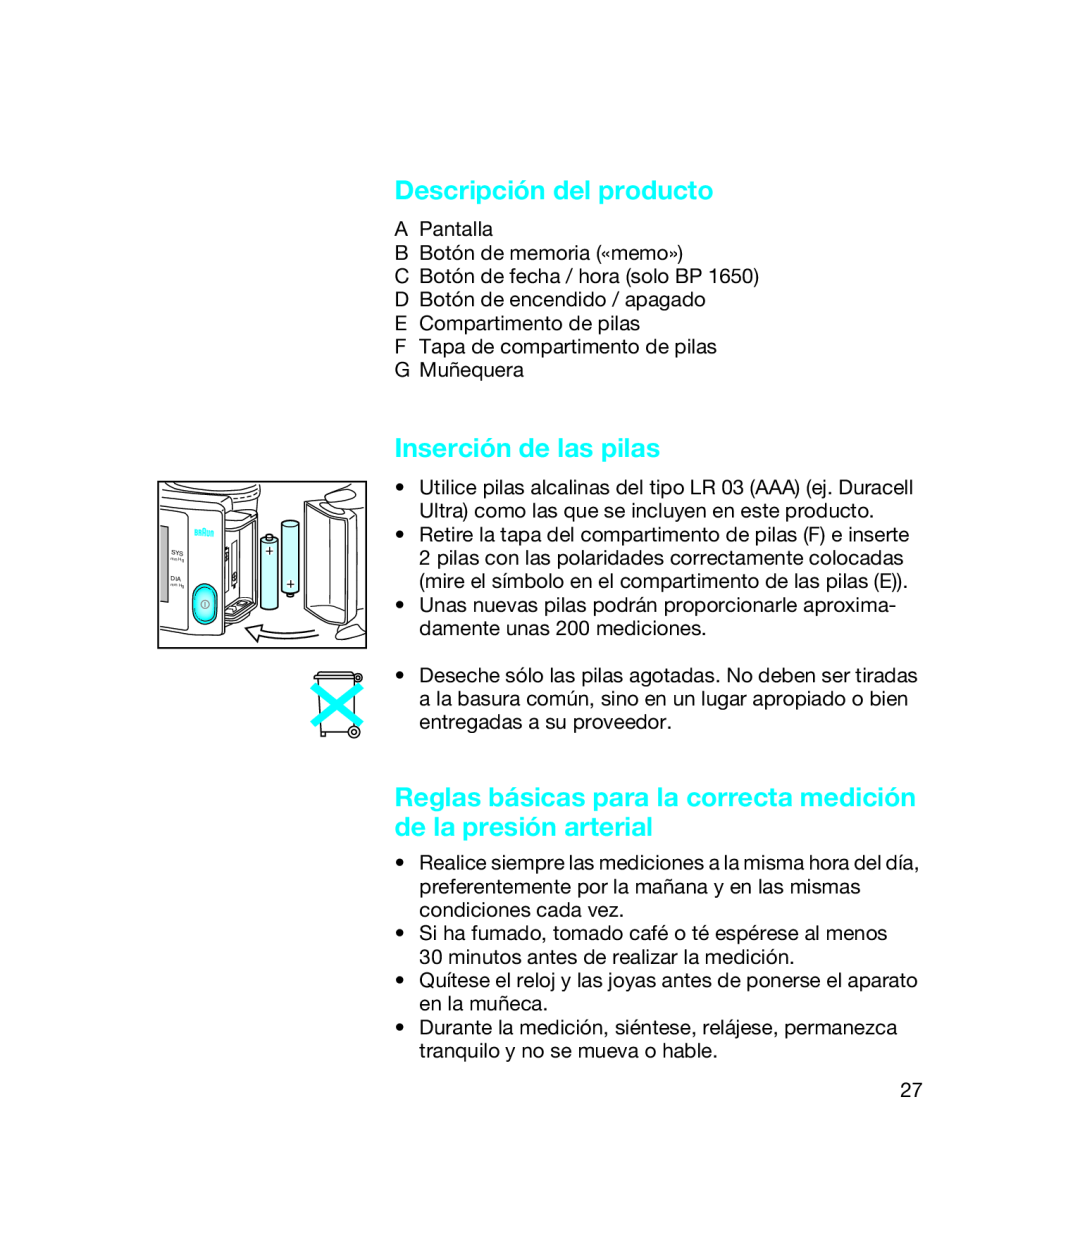 Braun BP 1650, bp1600 manual Descripción del producto, Inserción de las pilas 